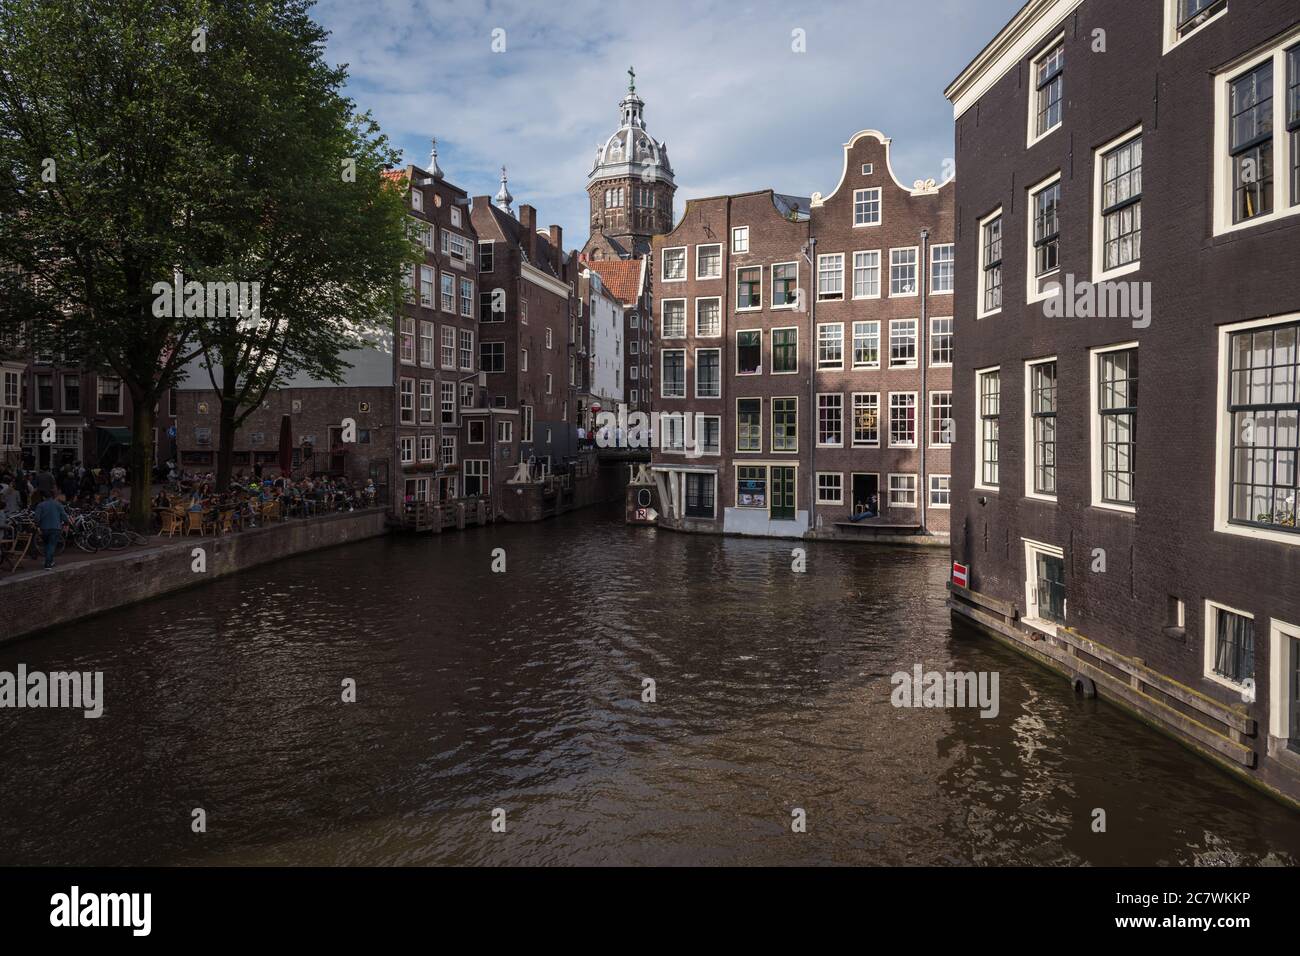 Vue sur la ville d'Amsterdam avec canaux et maisons hollandaises typiques, pays-Bas Banque D'Images